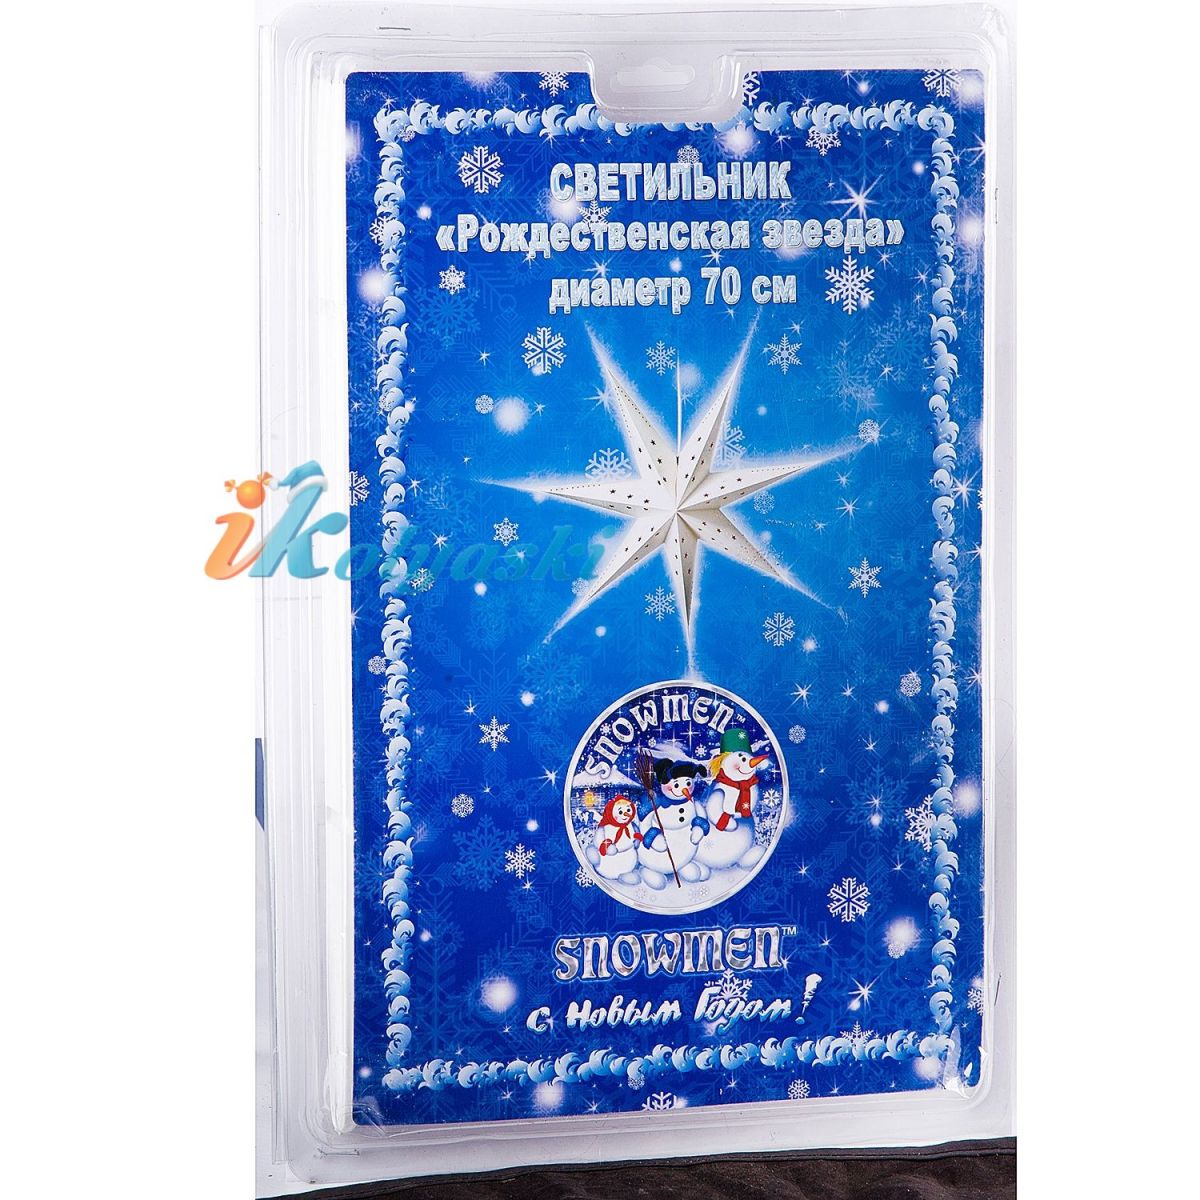 Новогодняя электрическая гирлянда светильник Рождественская звезда, цвет кремовый, диаметр 70 см , белый кабель 1,5 м, артикул Е96390, Snowmen